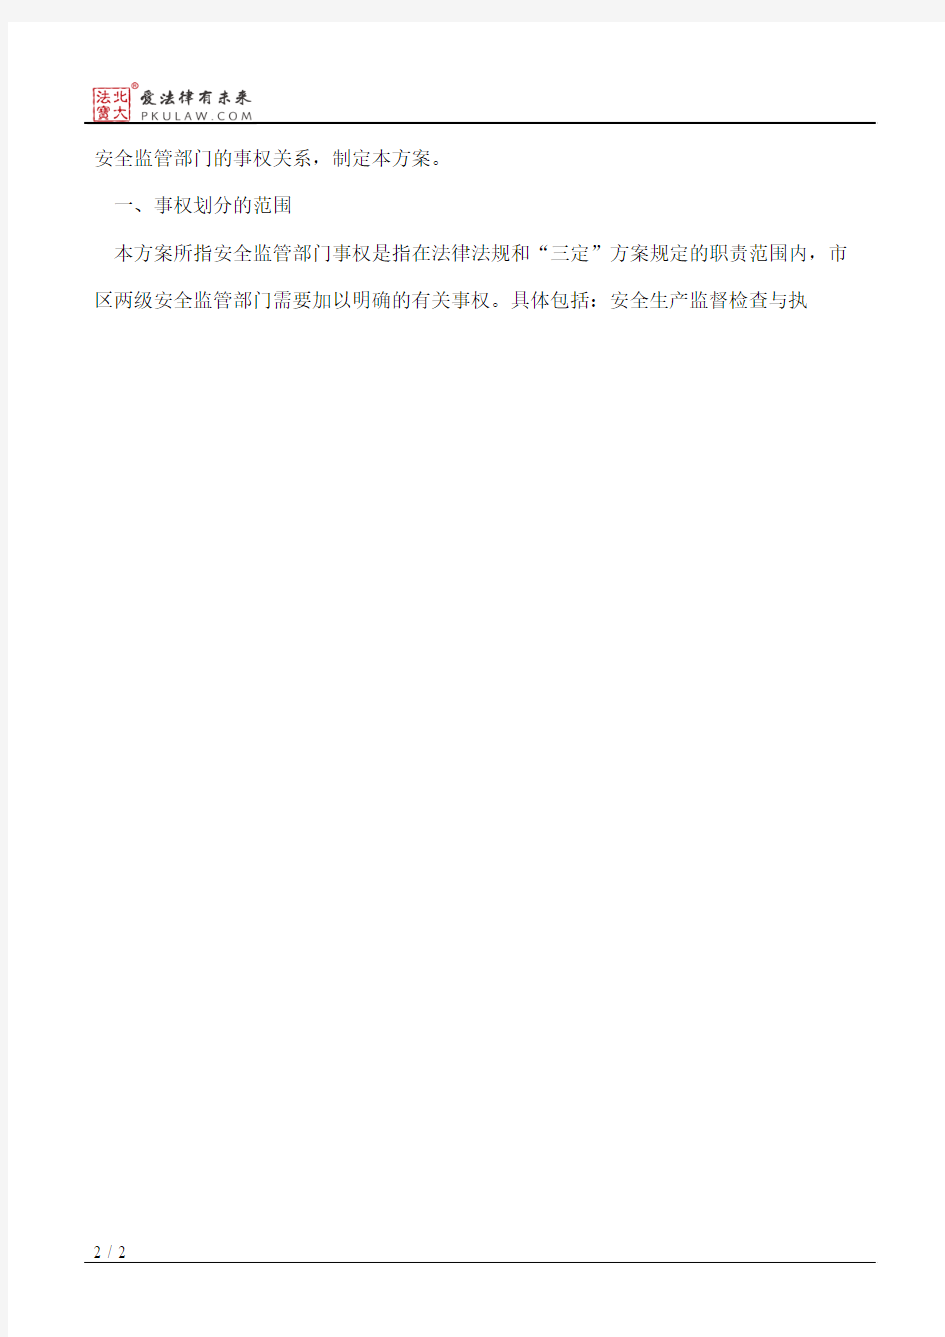 深圳市人民政府批转市安全生产监督管理局关于市区安全监管部门事